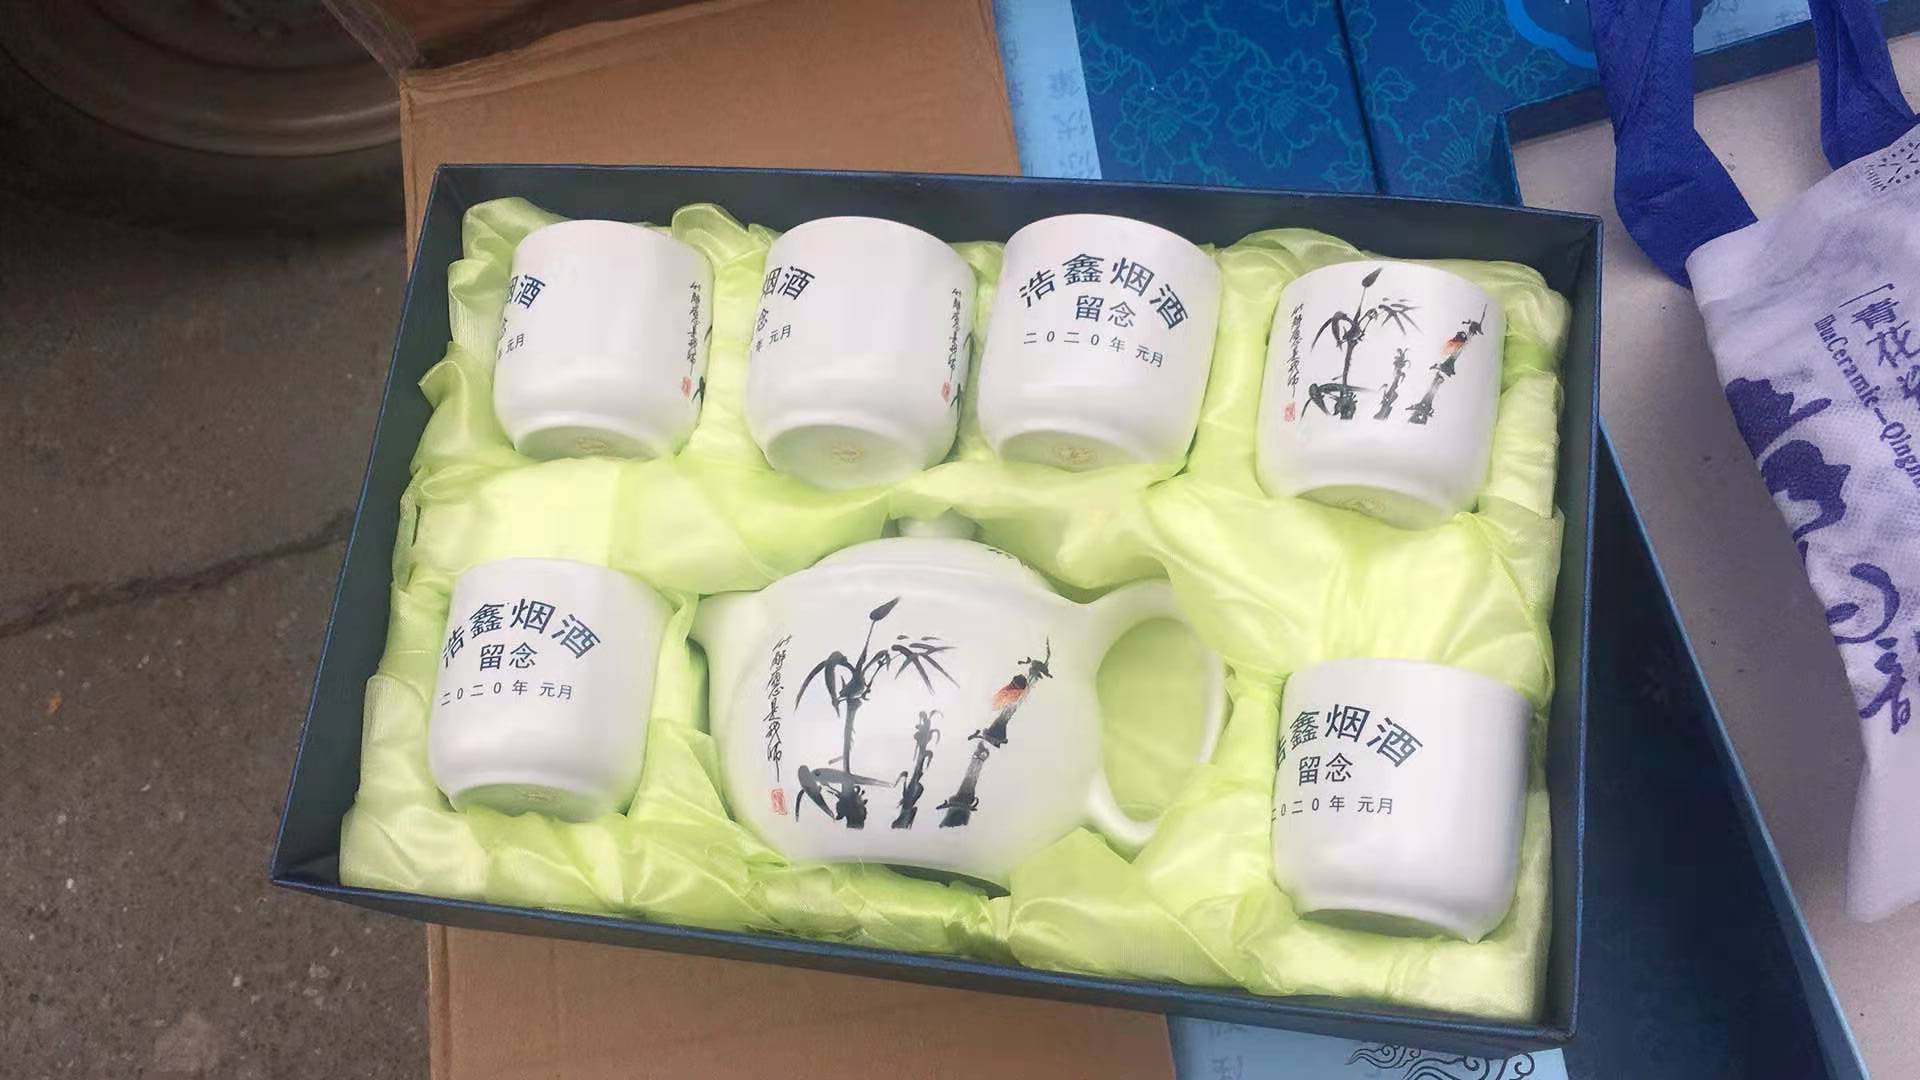 陶瓷餐具四件套名牌 节日福利礼品瓷 7头印花陶瓷茶具 陶瓷套装定制logo